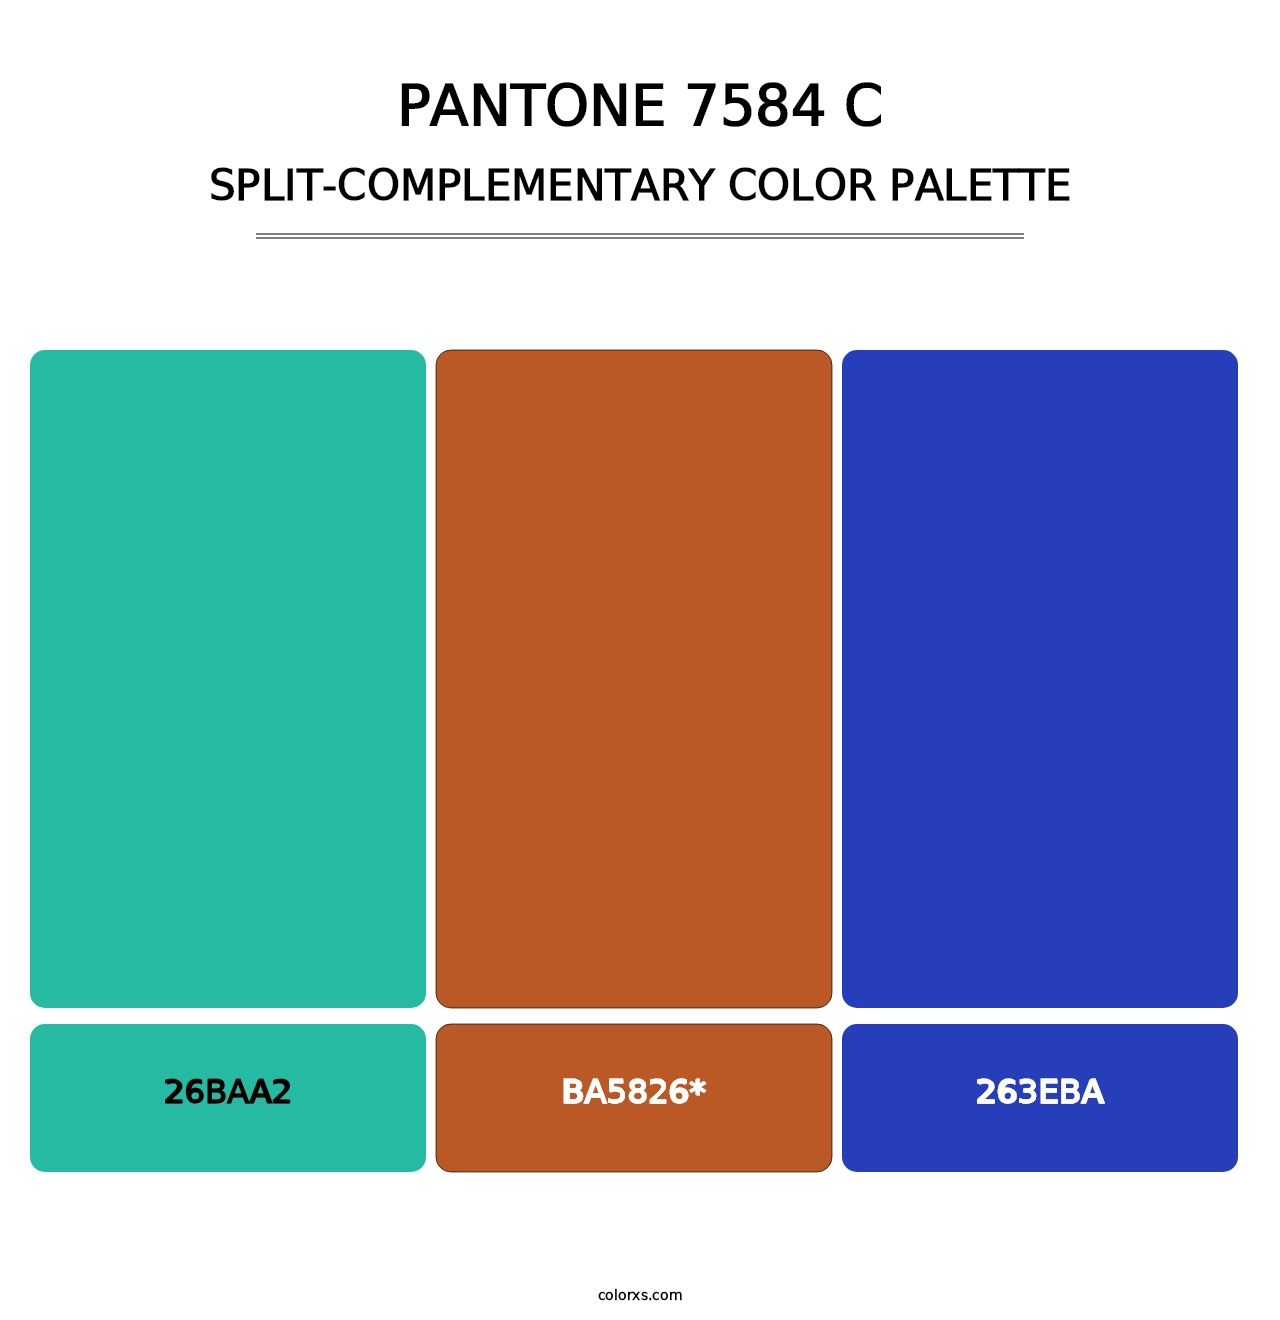 PANTONE 7584 C - Split-Complementary Color Palette